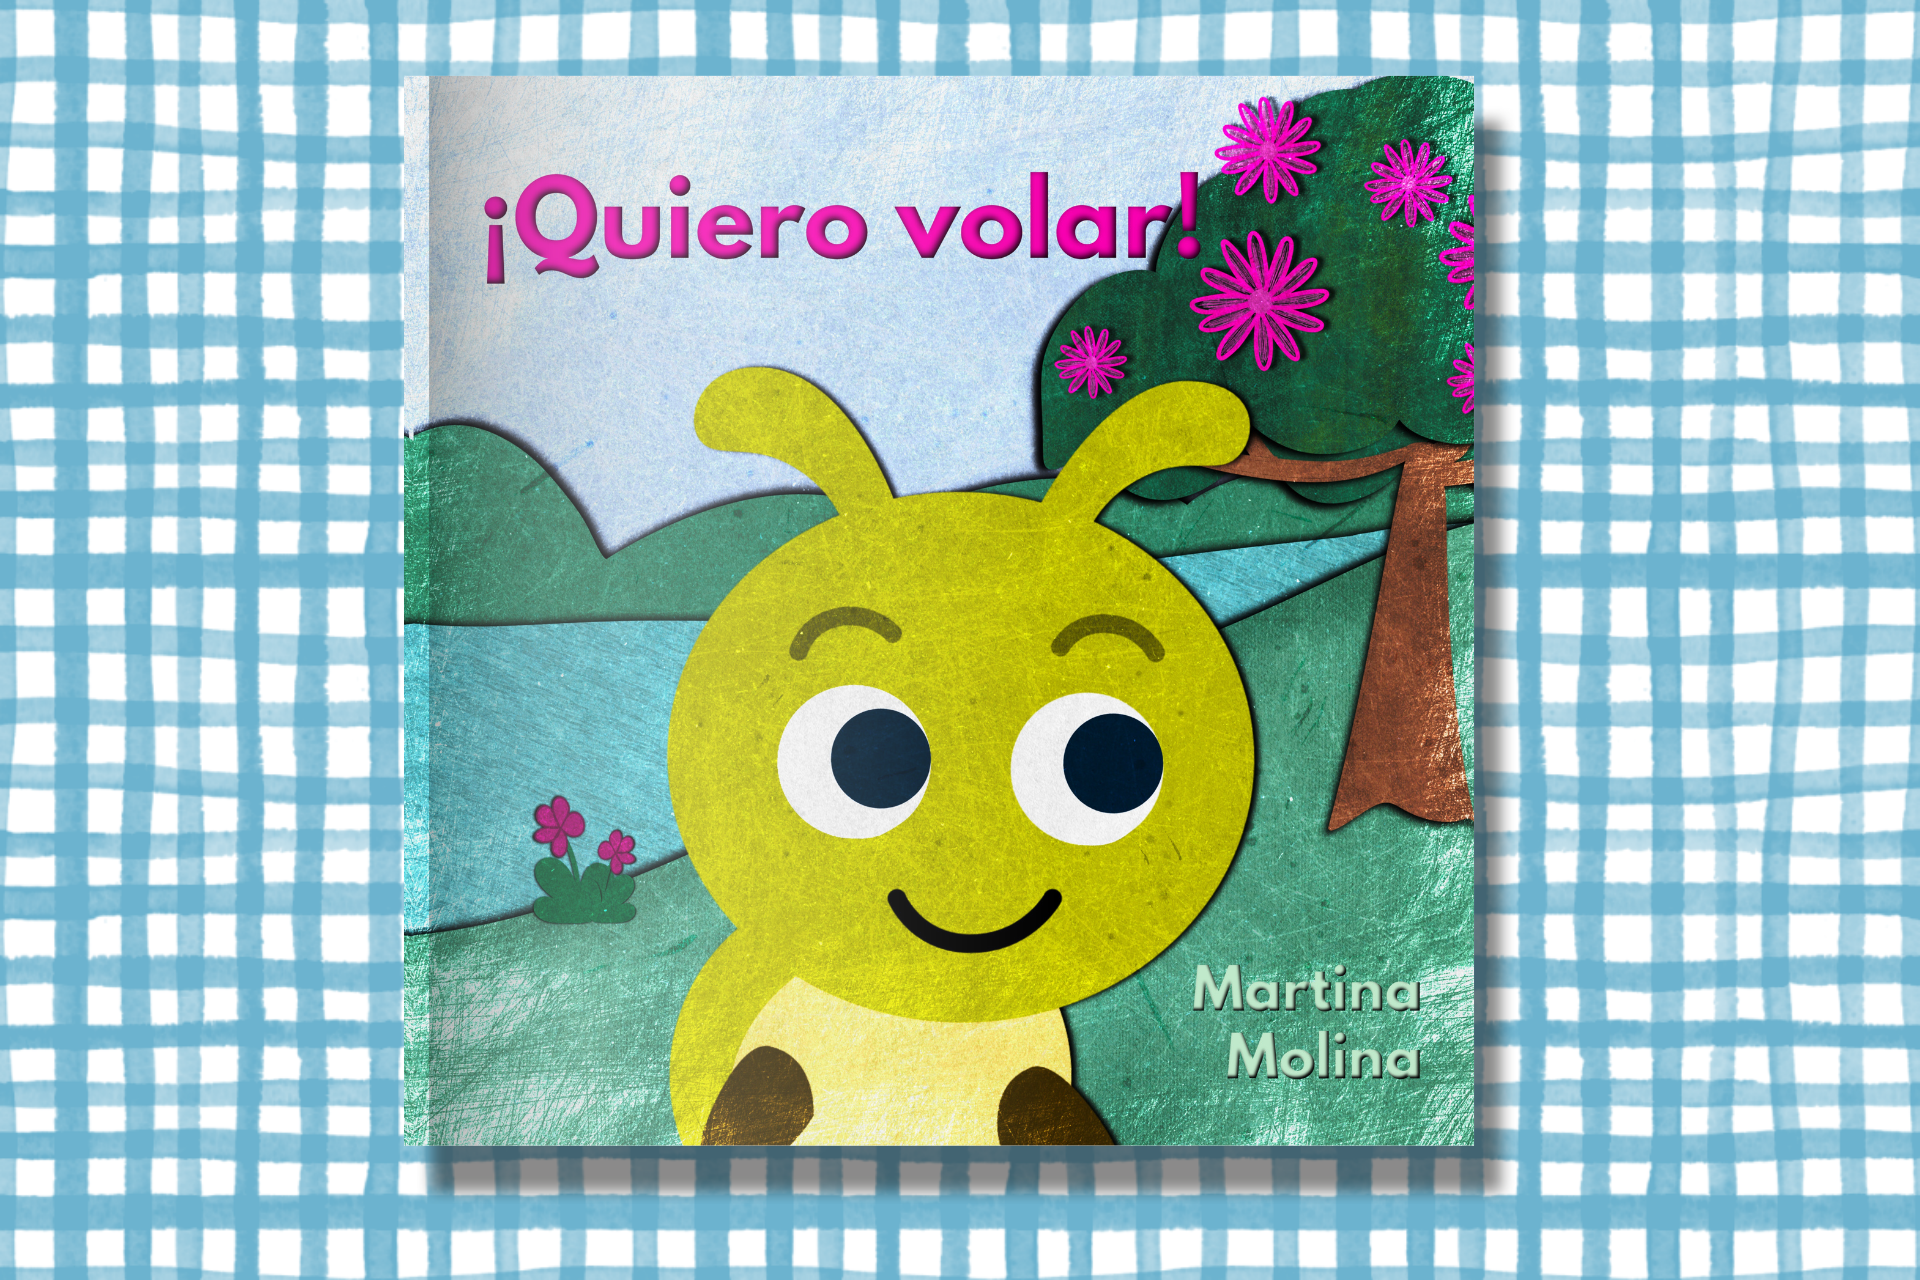 Libros para niños de 2, 3, 4 y 5 años – libros infantiles Martina Molina